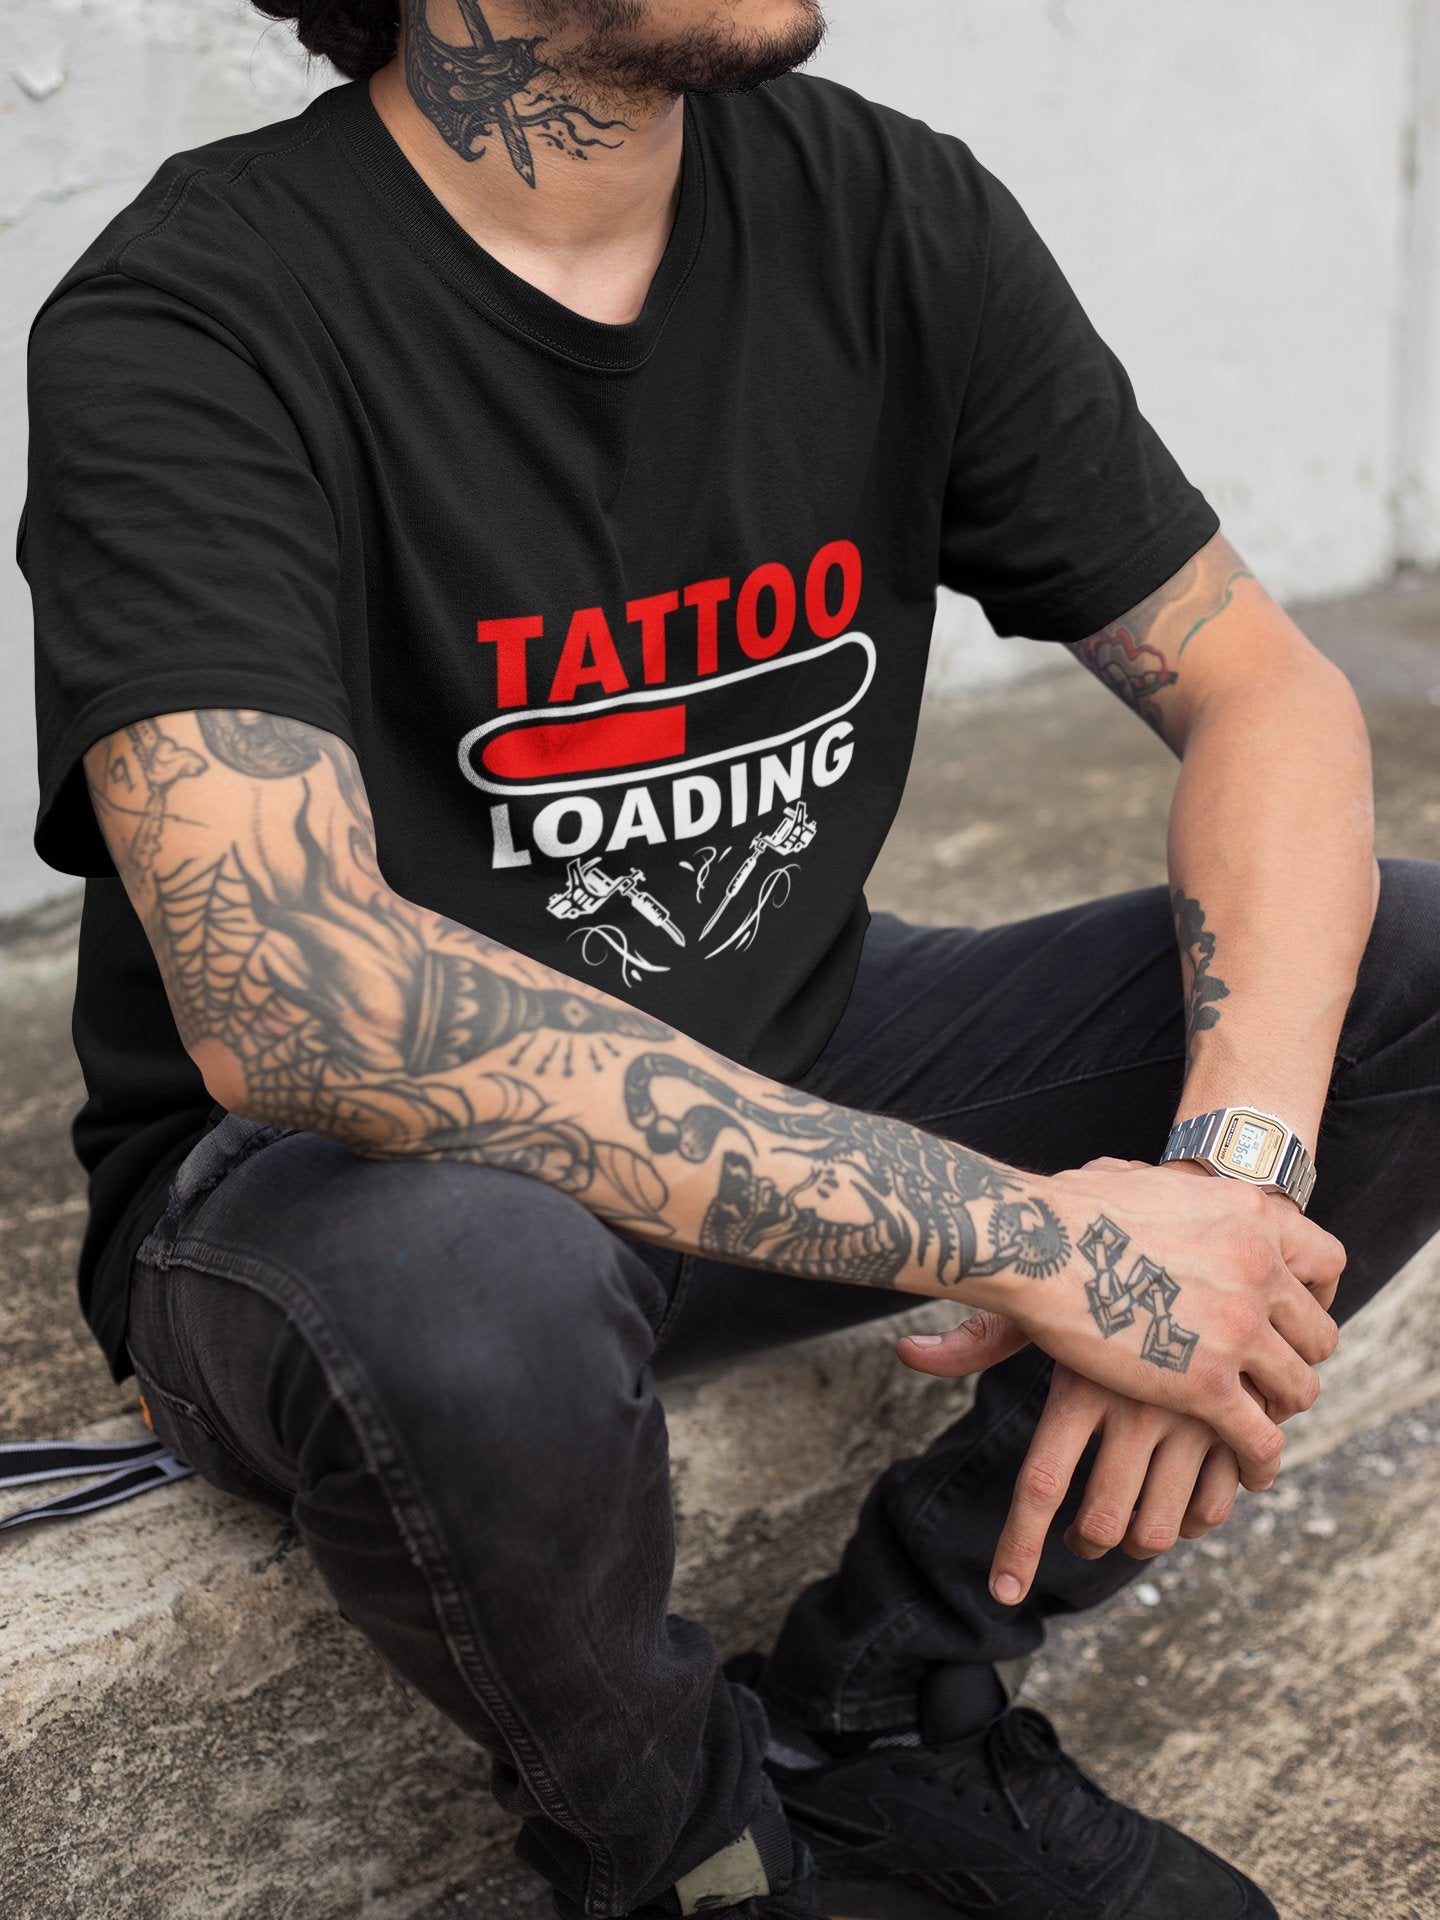 Loading Tattoo T-Shirt - Tattooed T-Shirt Gift